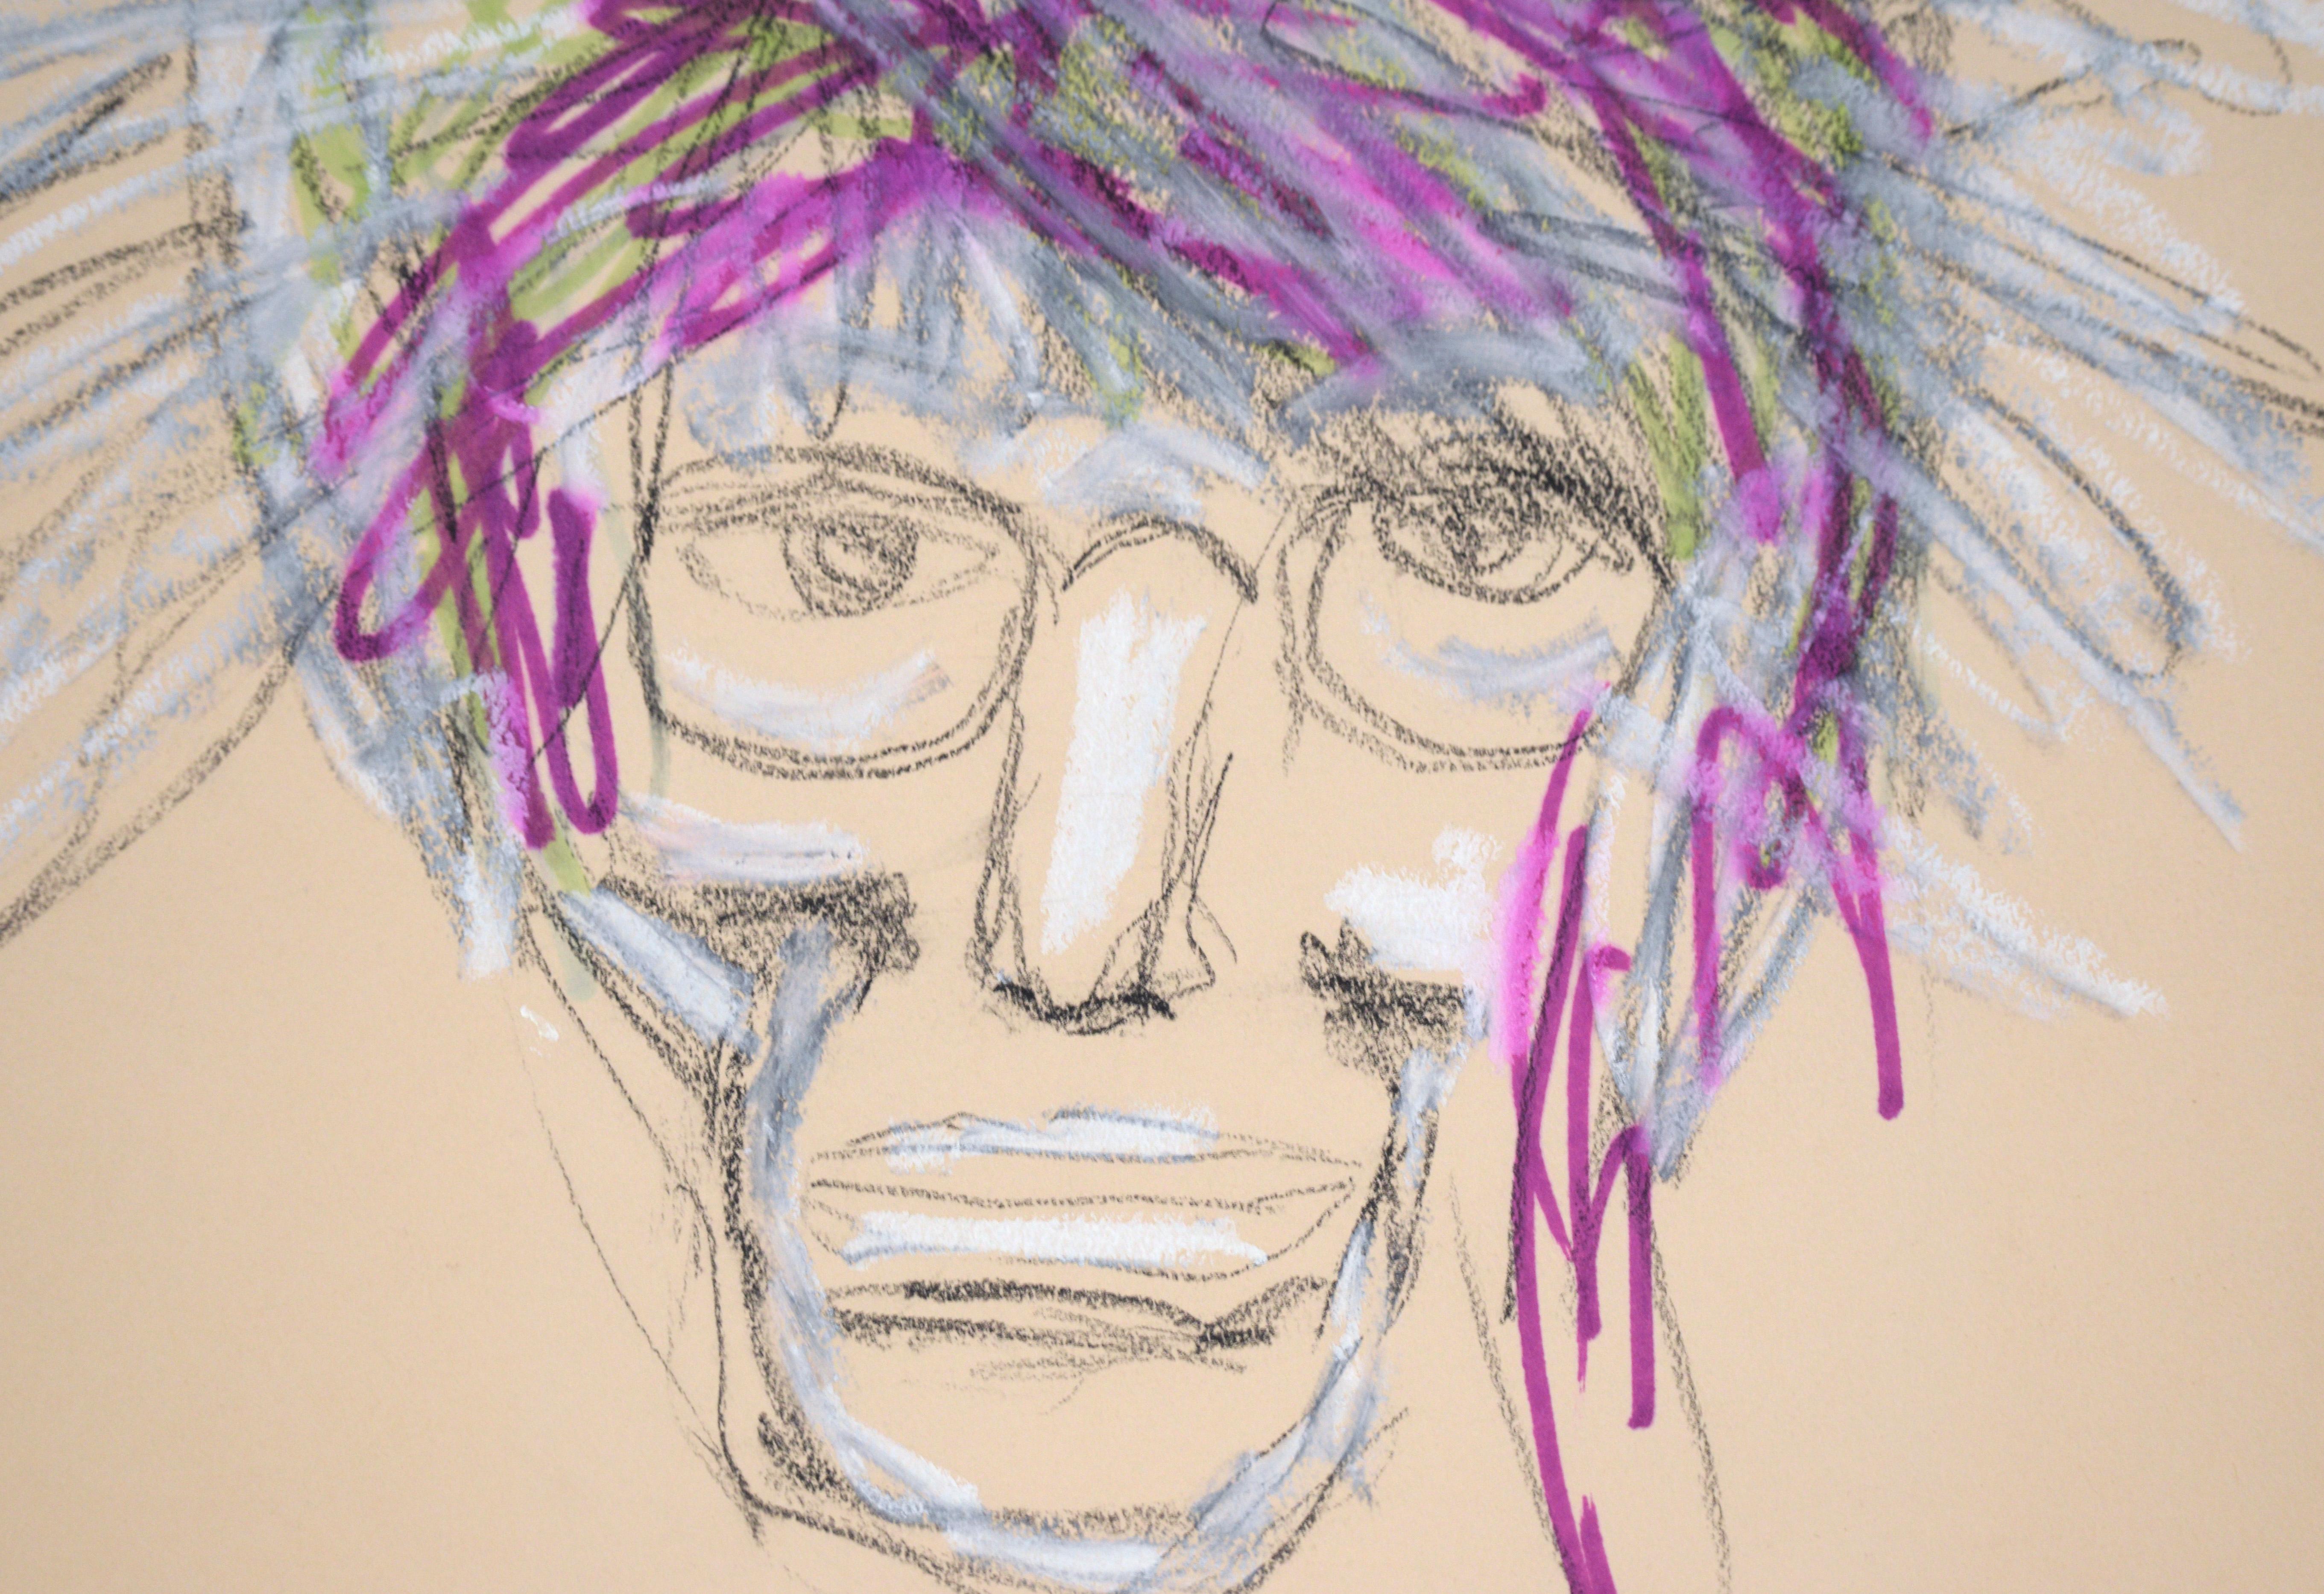 Portrait d'Andy Warhol avec des cheveux violets au pastel et à la gouache sur papier

Portrait fantaisiste de Ricardo de Silva (Brésilien, XXe siècle). Andy Warhol regarde directement le spectateur avec ses cheveux violets, blancs et verts.